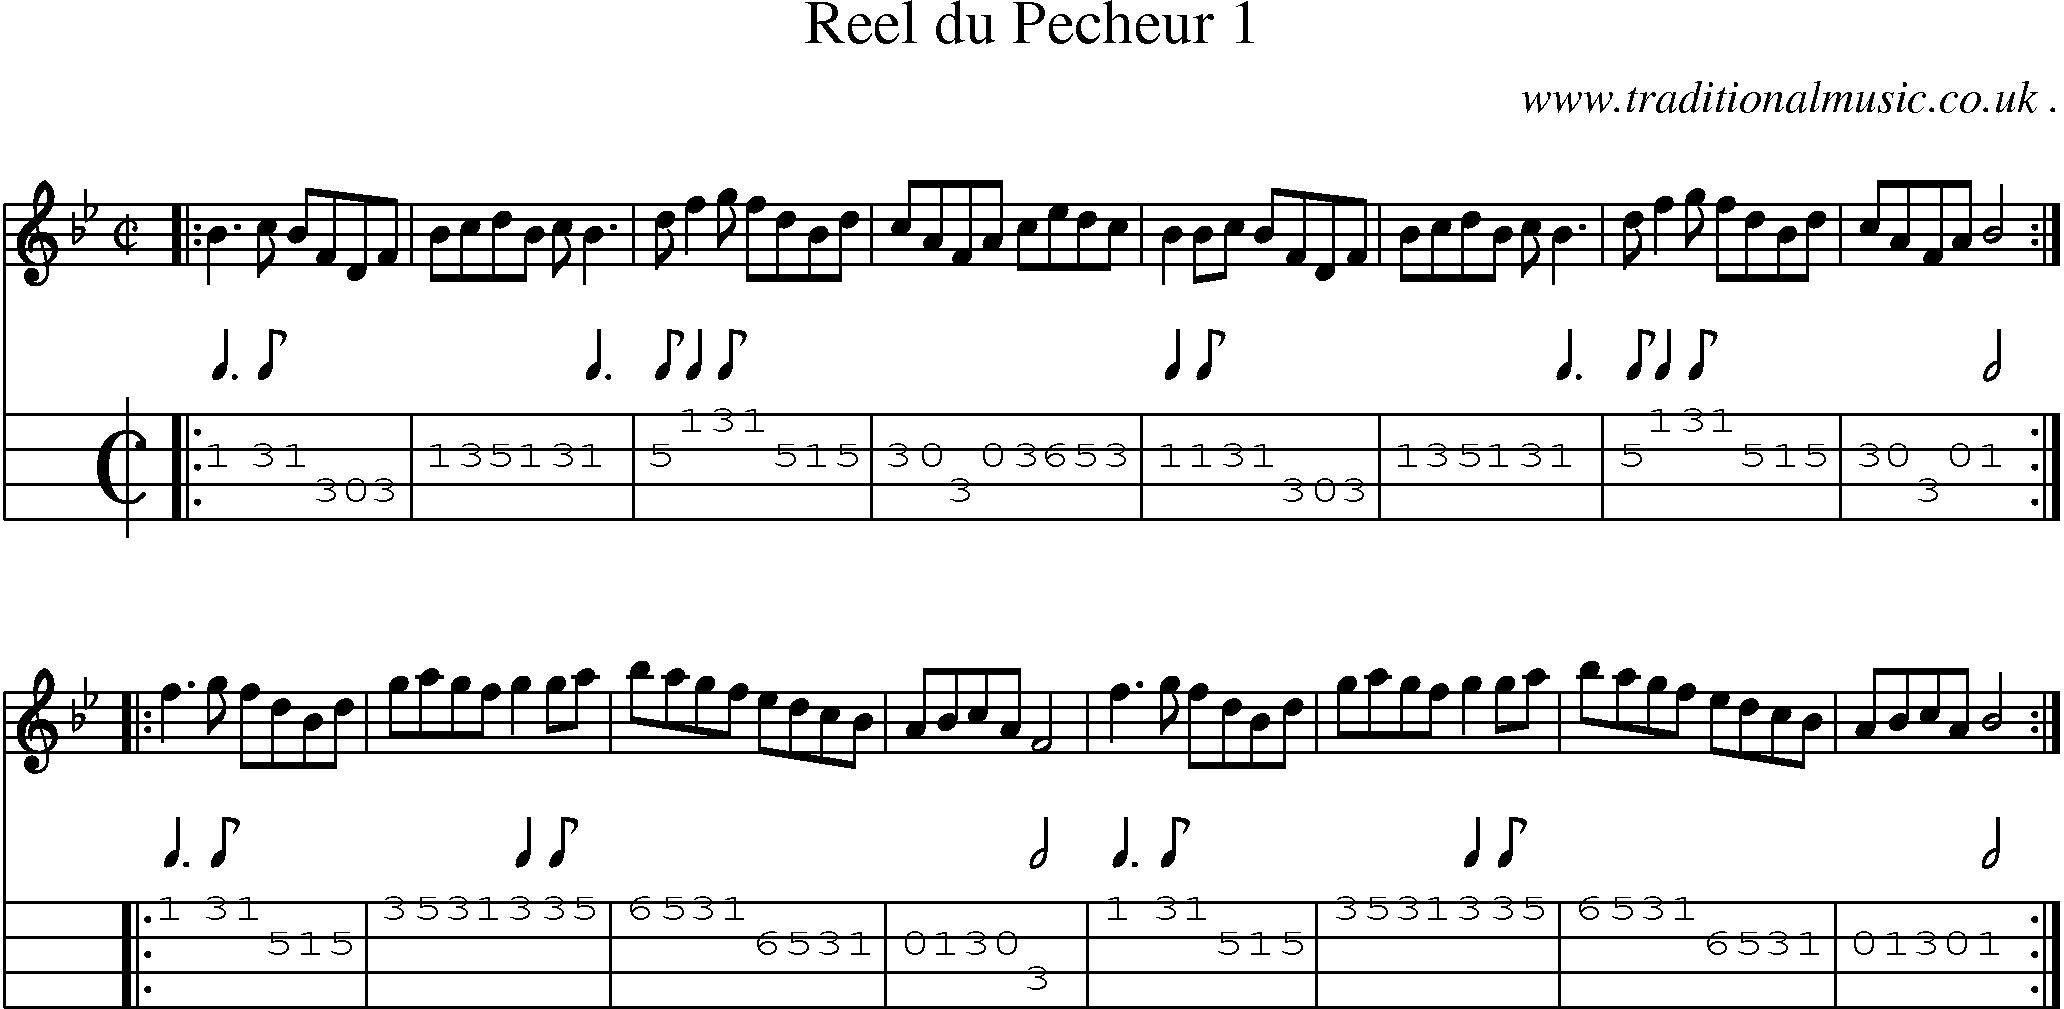 Sheet-Music and Mandolin Tabs for Reel Du Pecheur 1